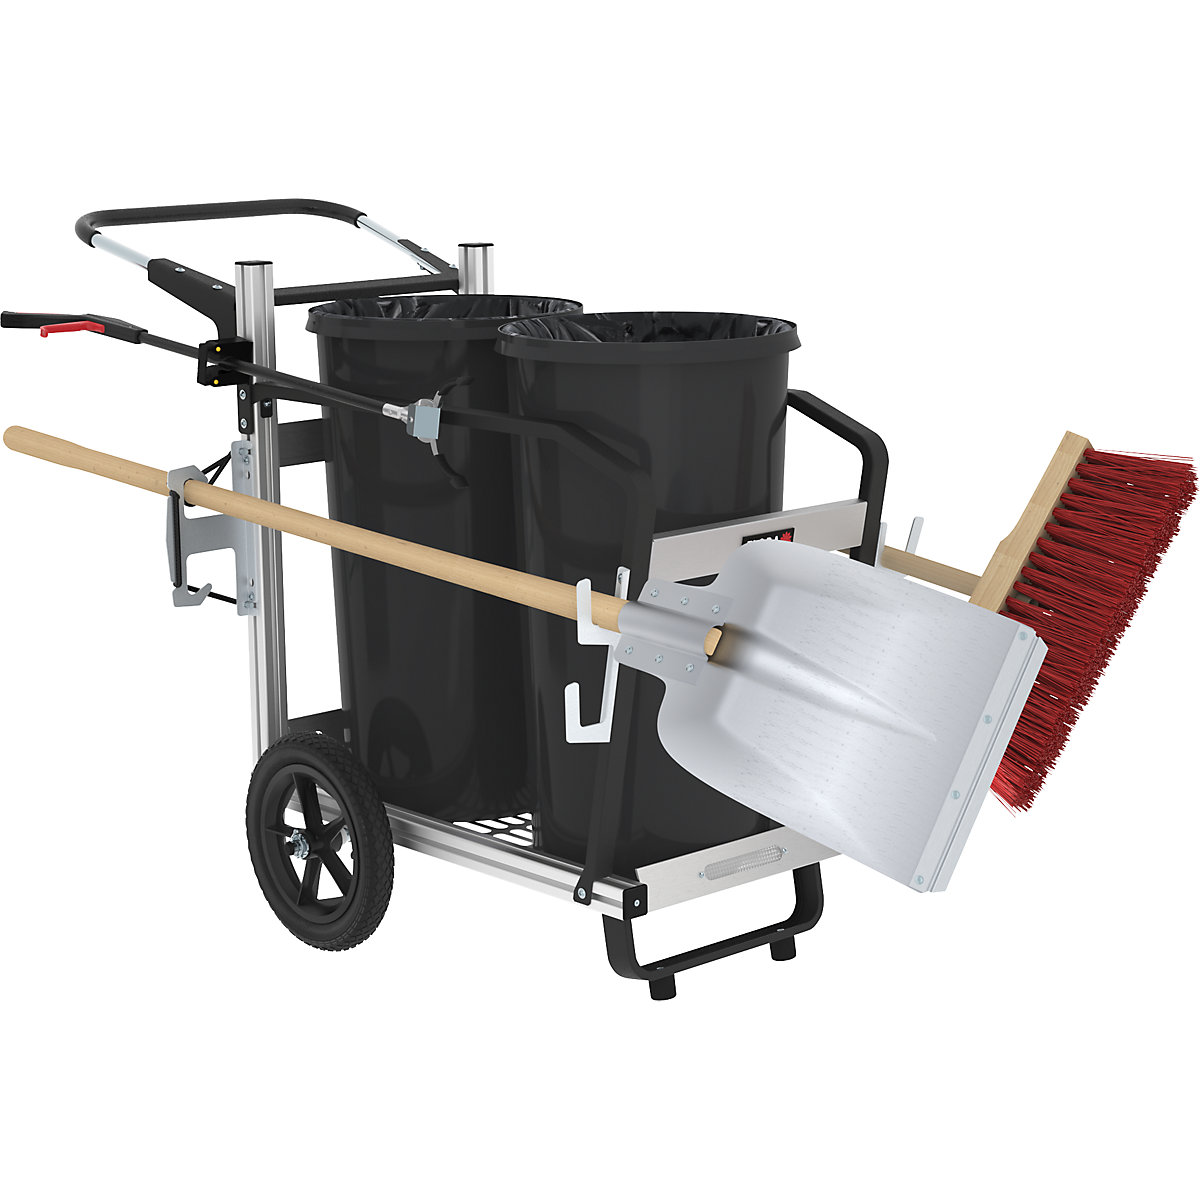 Zberný vozík na odpadky Easy Duo – FLORA